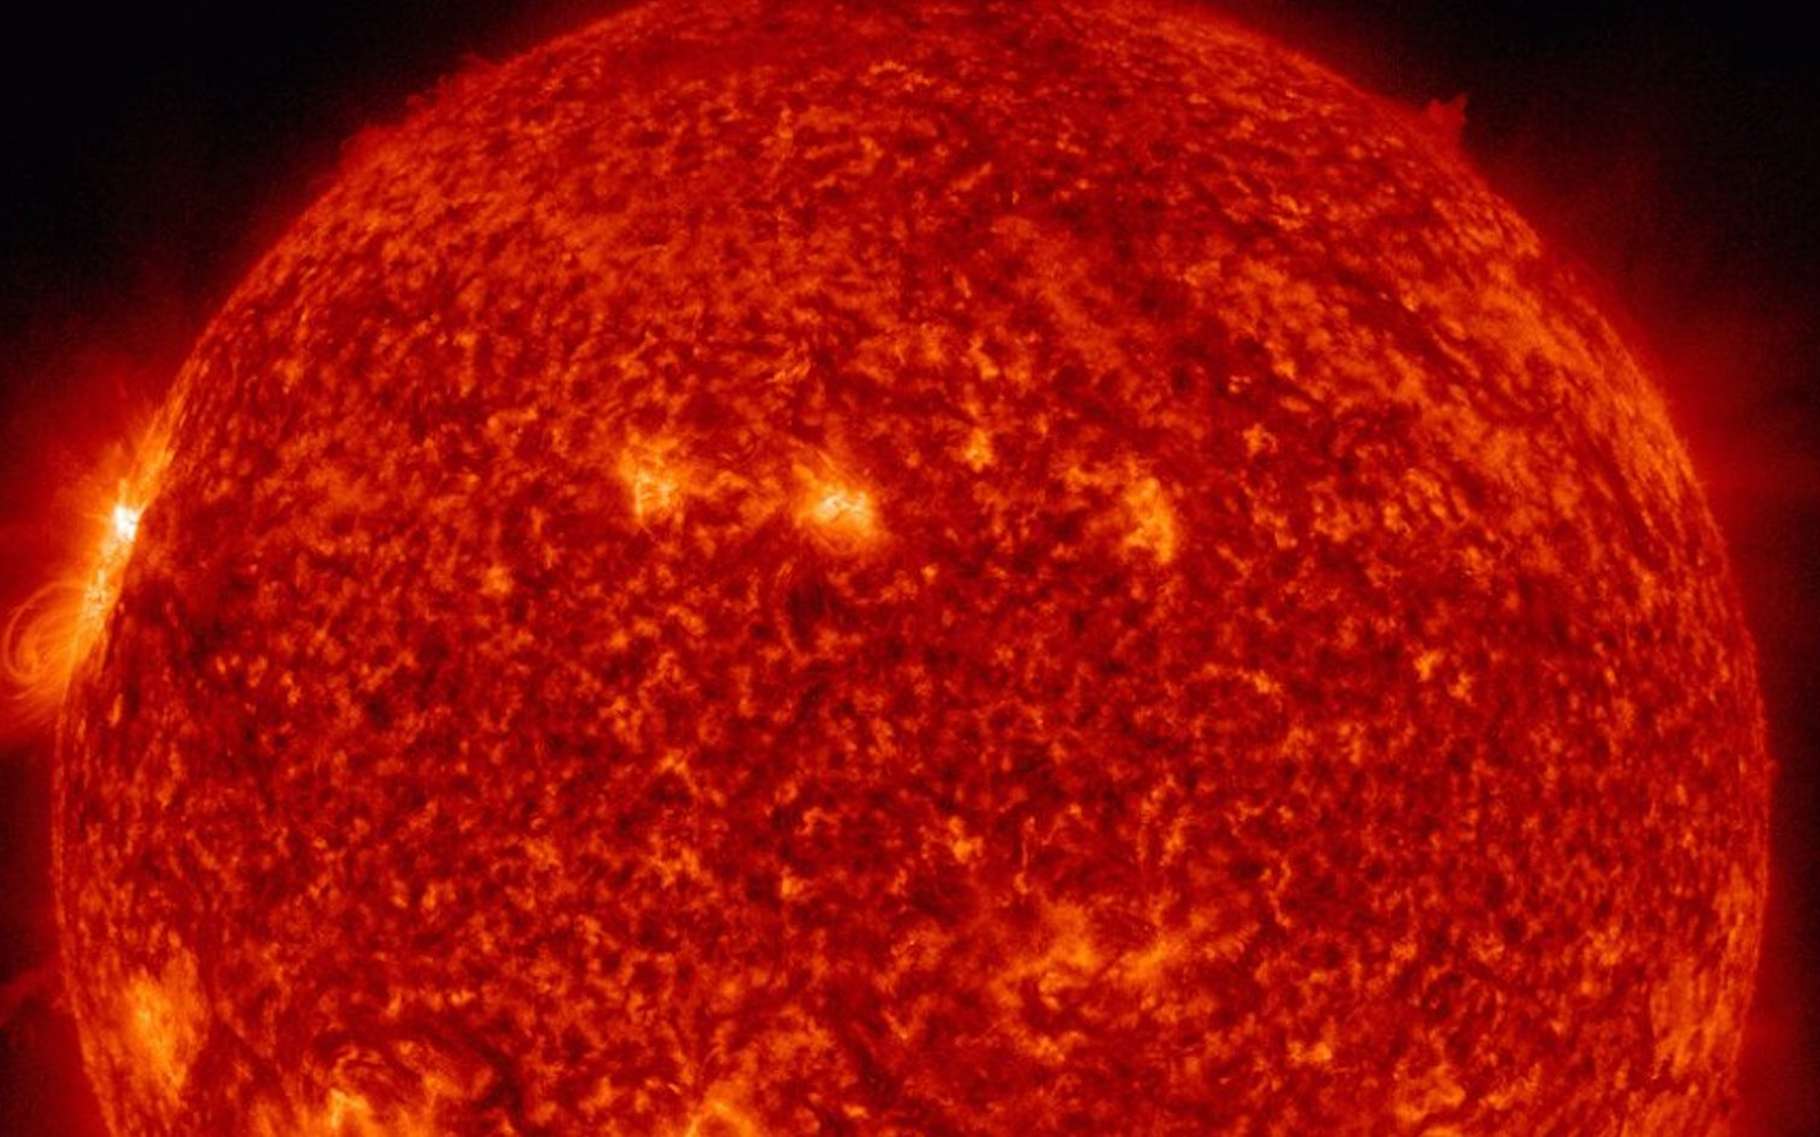 La plus puissante éruption du nouveau cycle d'activité du Soleil s'est produite cette nuit